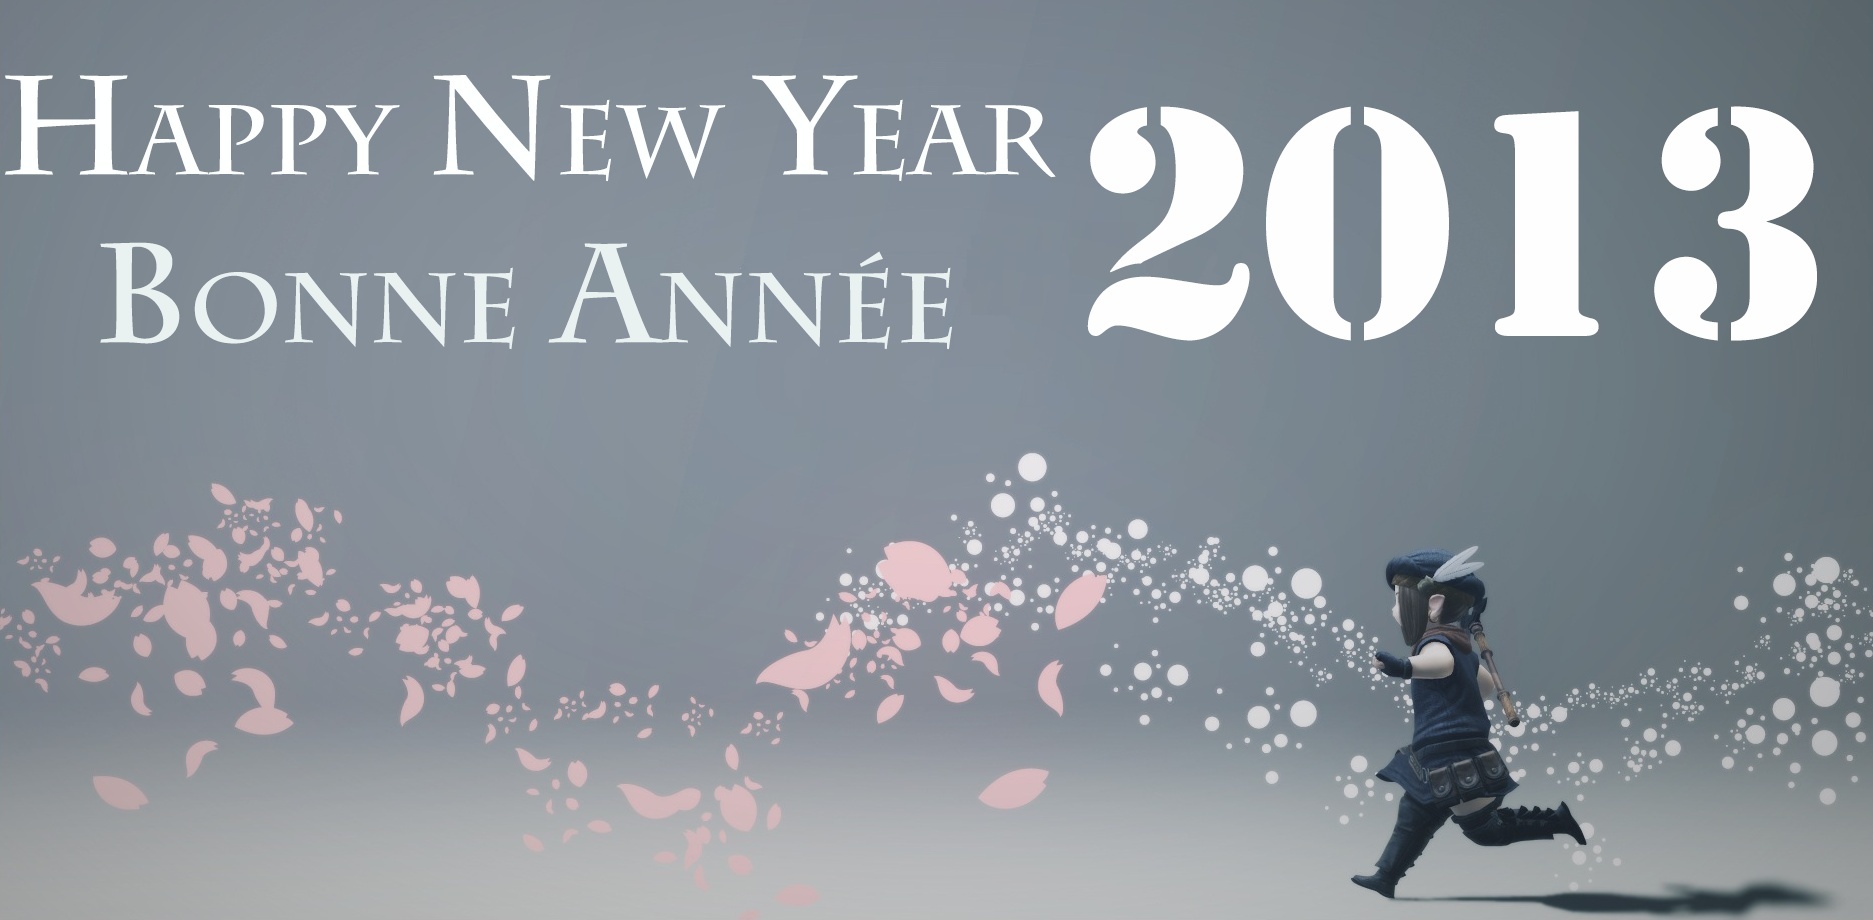 Bonne année 2013 / Happy New Year 2013 Zan_bo11